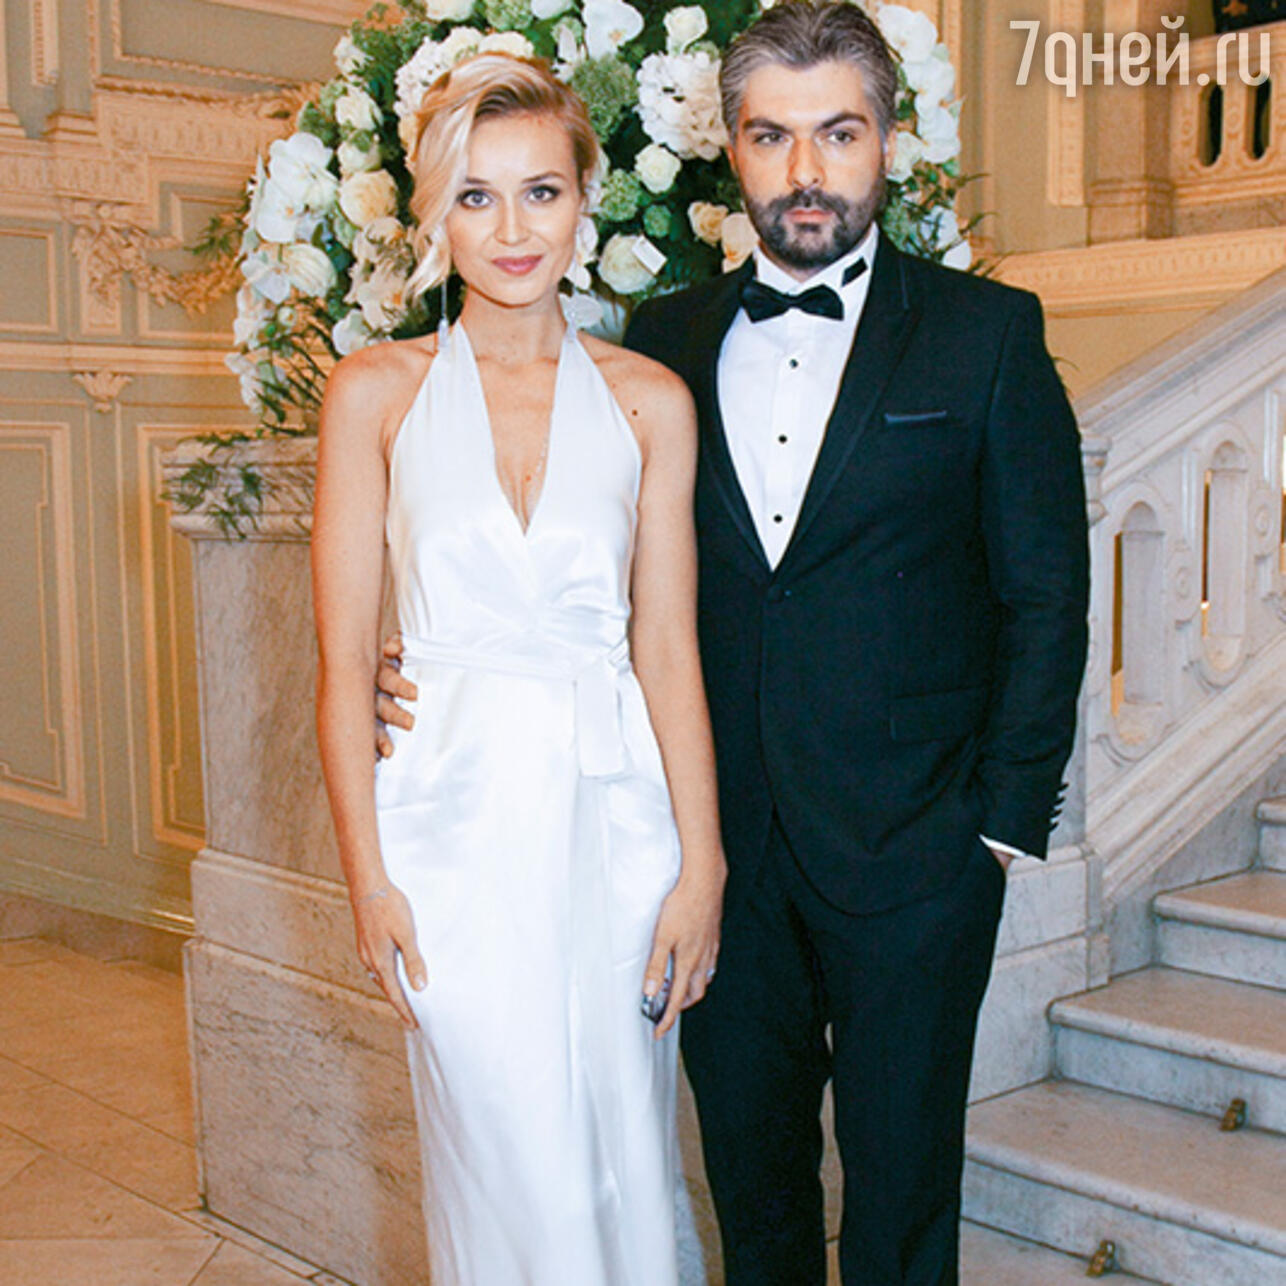 Полина с бывшим мужем Дмитрием Исхаковым